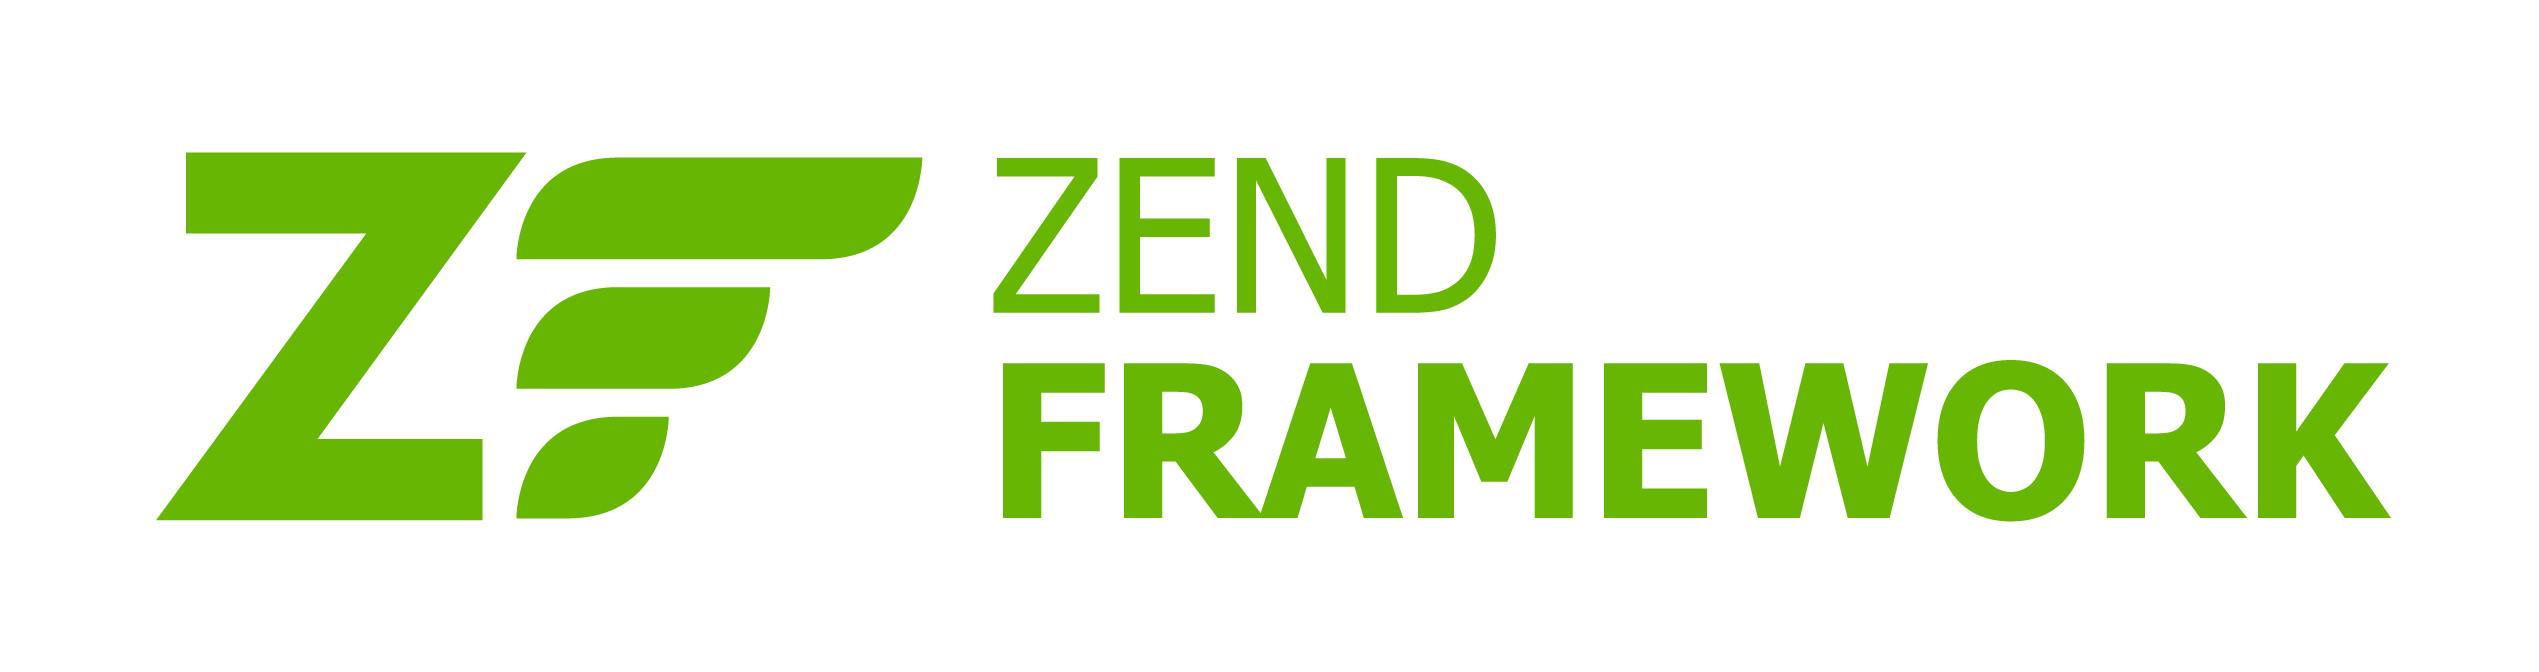 ZendFramework-logo